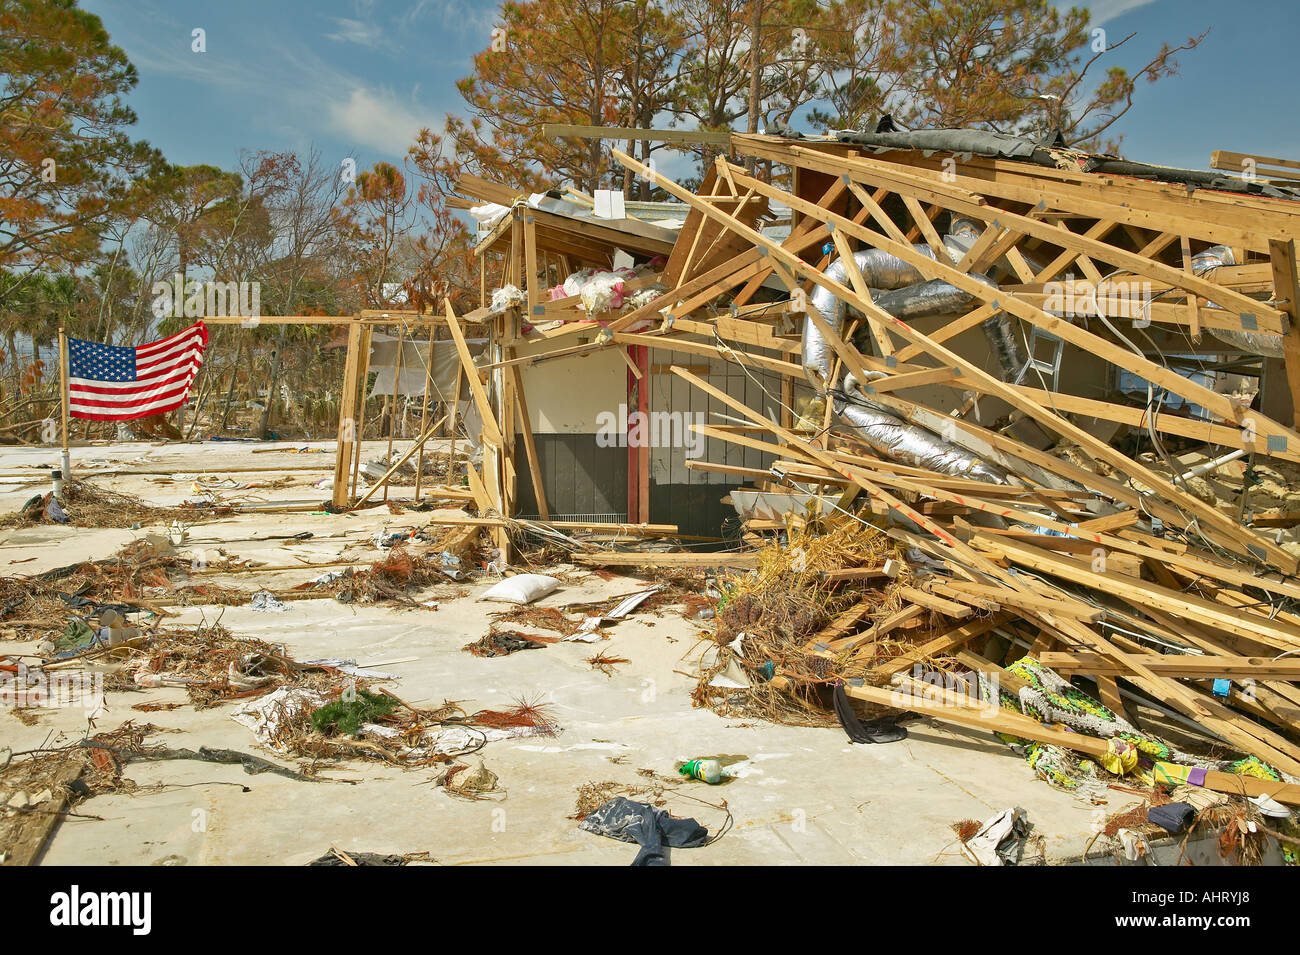 Las ondas de la bandera americana en el viento con suciedad en la parte frontal de la casa fuertemente golpeada por el huracán Iván en Pensacola, Florida Foto de stock